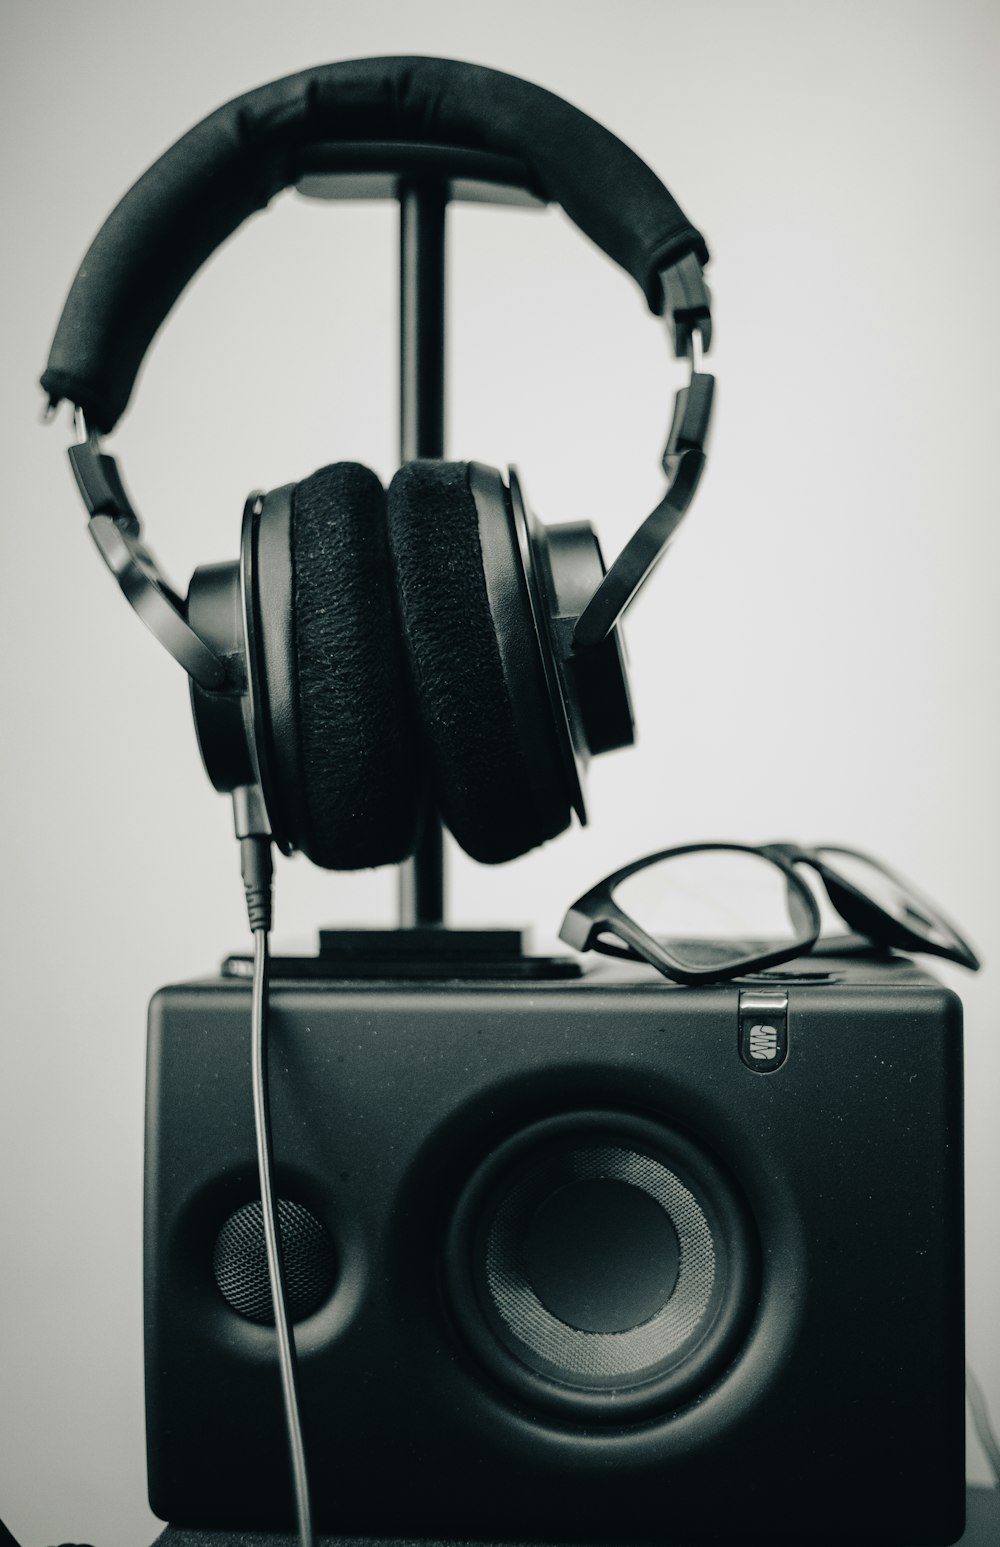 schwarze und silberne Kopfhörer auf schwarzem Lautsprecher